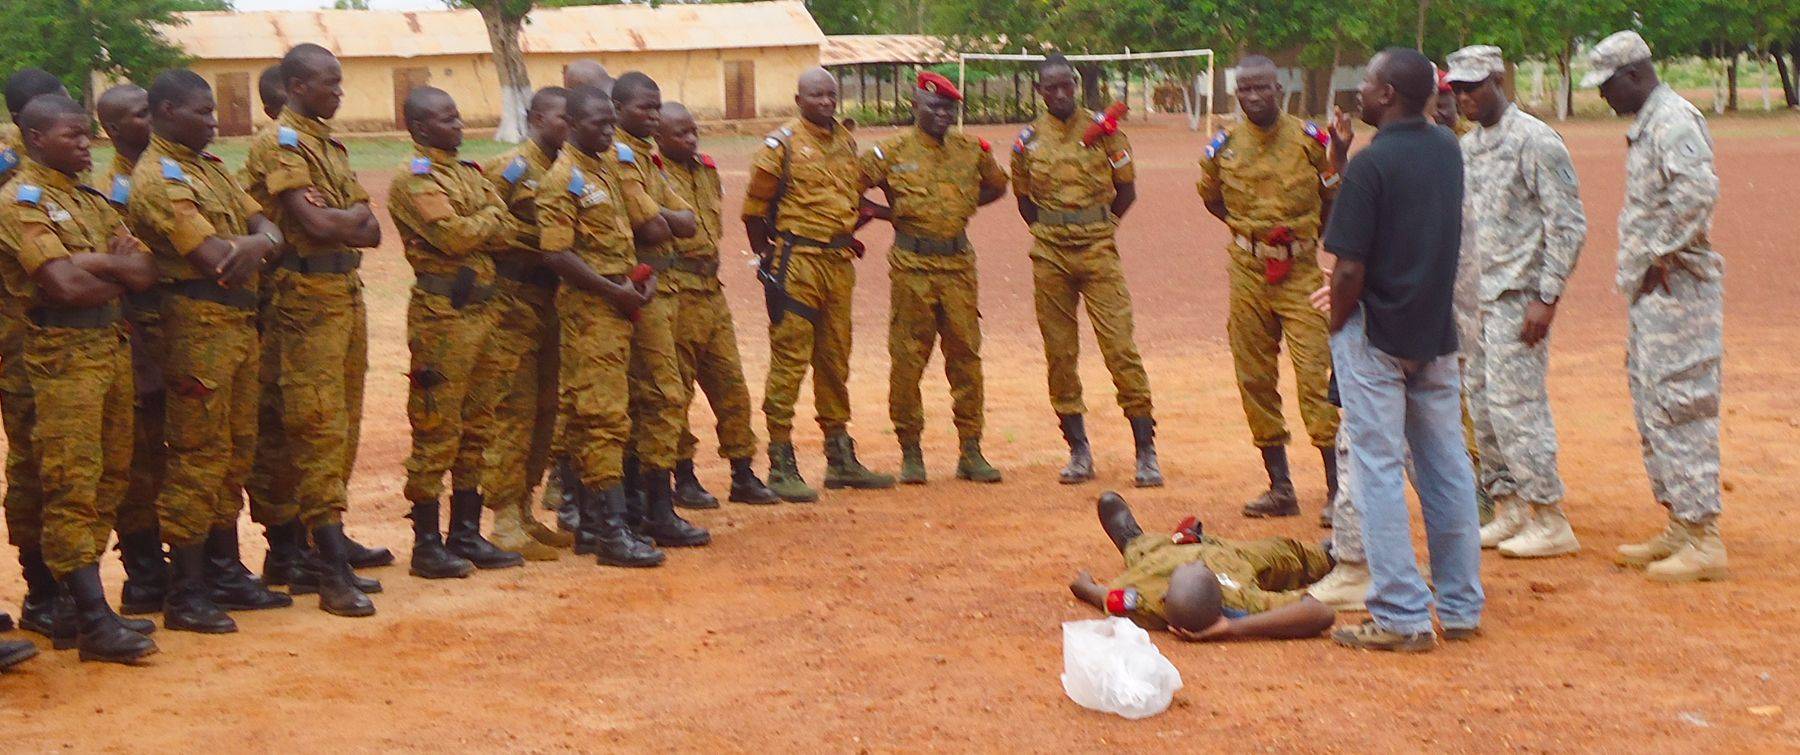 Борьба с терроризмом. В Буркина-Фасо проходит обучение и оснащение